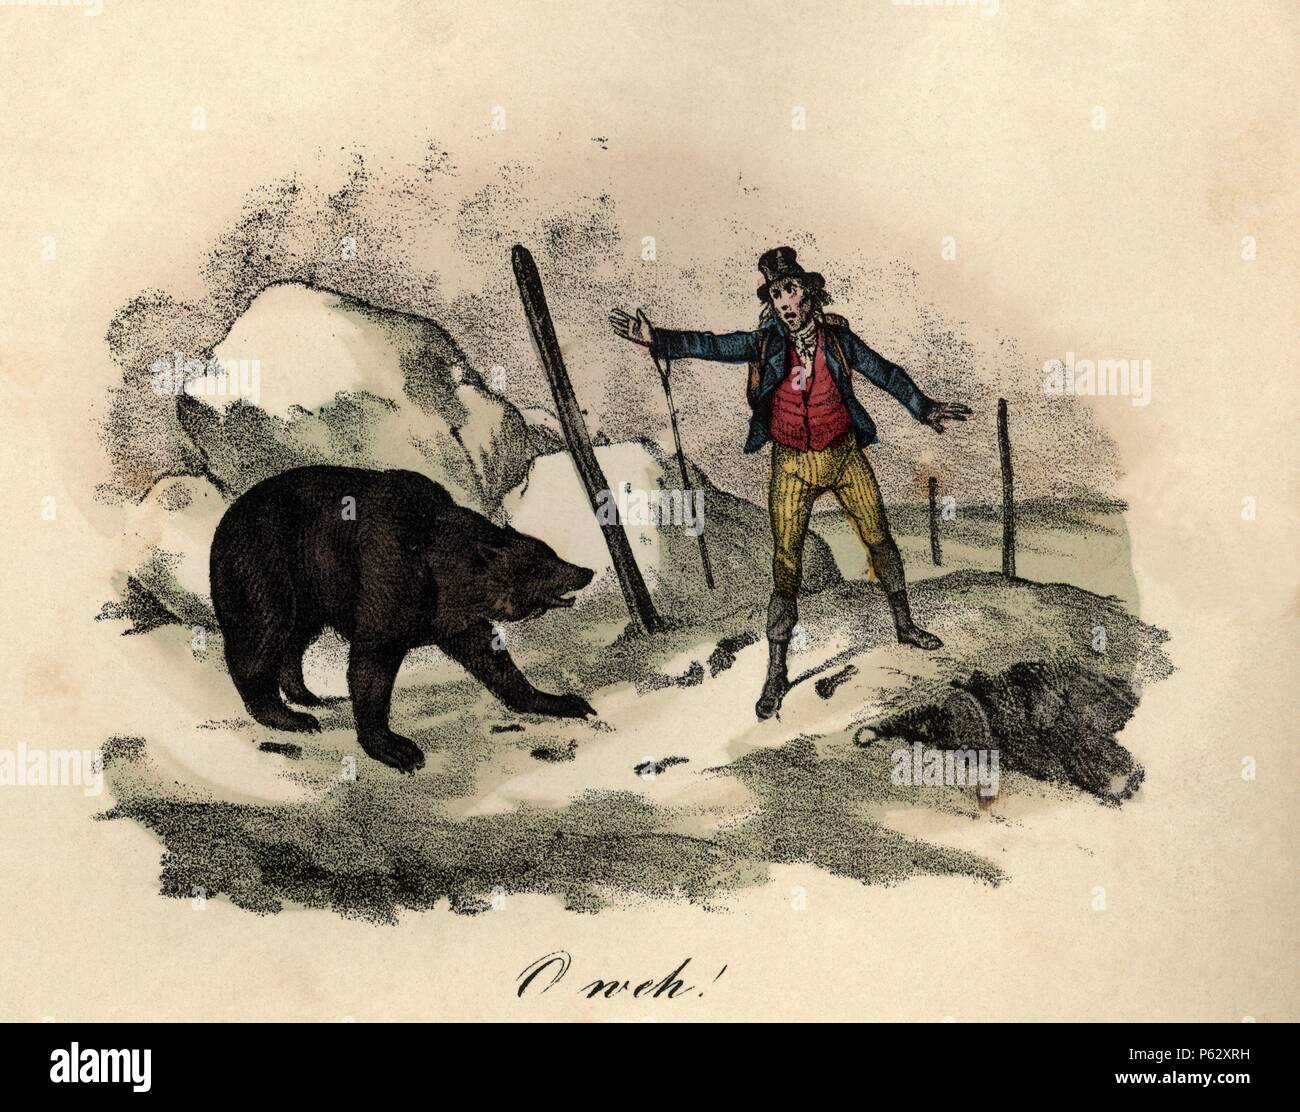 Encuentro entre un caminante y un oso salvaje. Grabado alemán de 1880. Stock Photo